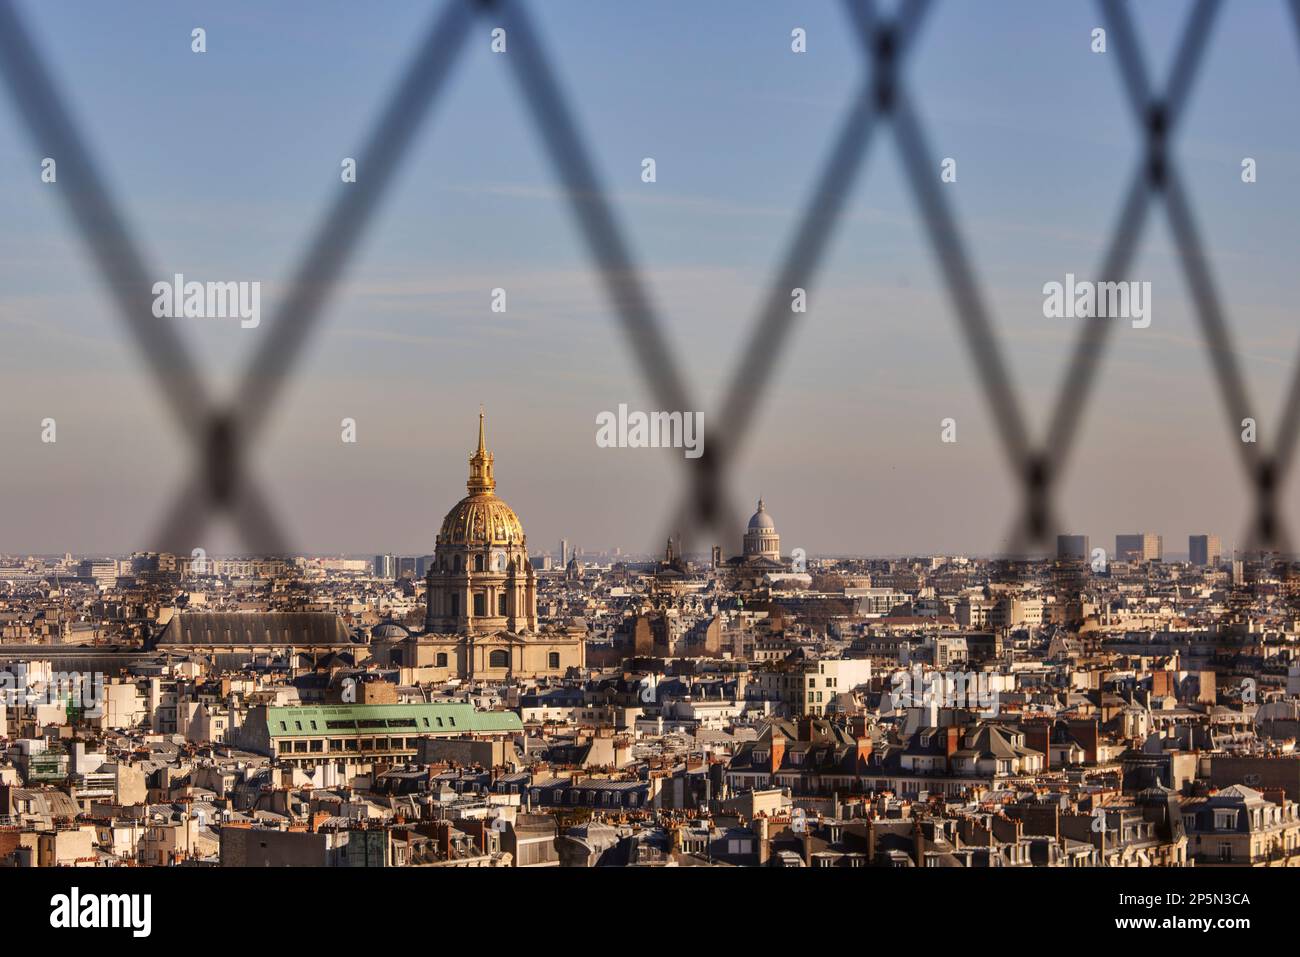 Simbolo di Parigi, i tetti che incorniciano la cupola dorata di Les Invalides e la tomba di Napoleone attraverso la rete della Torre Eiffel Foto Stock